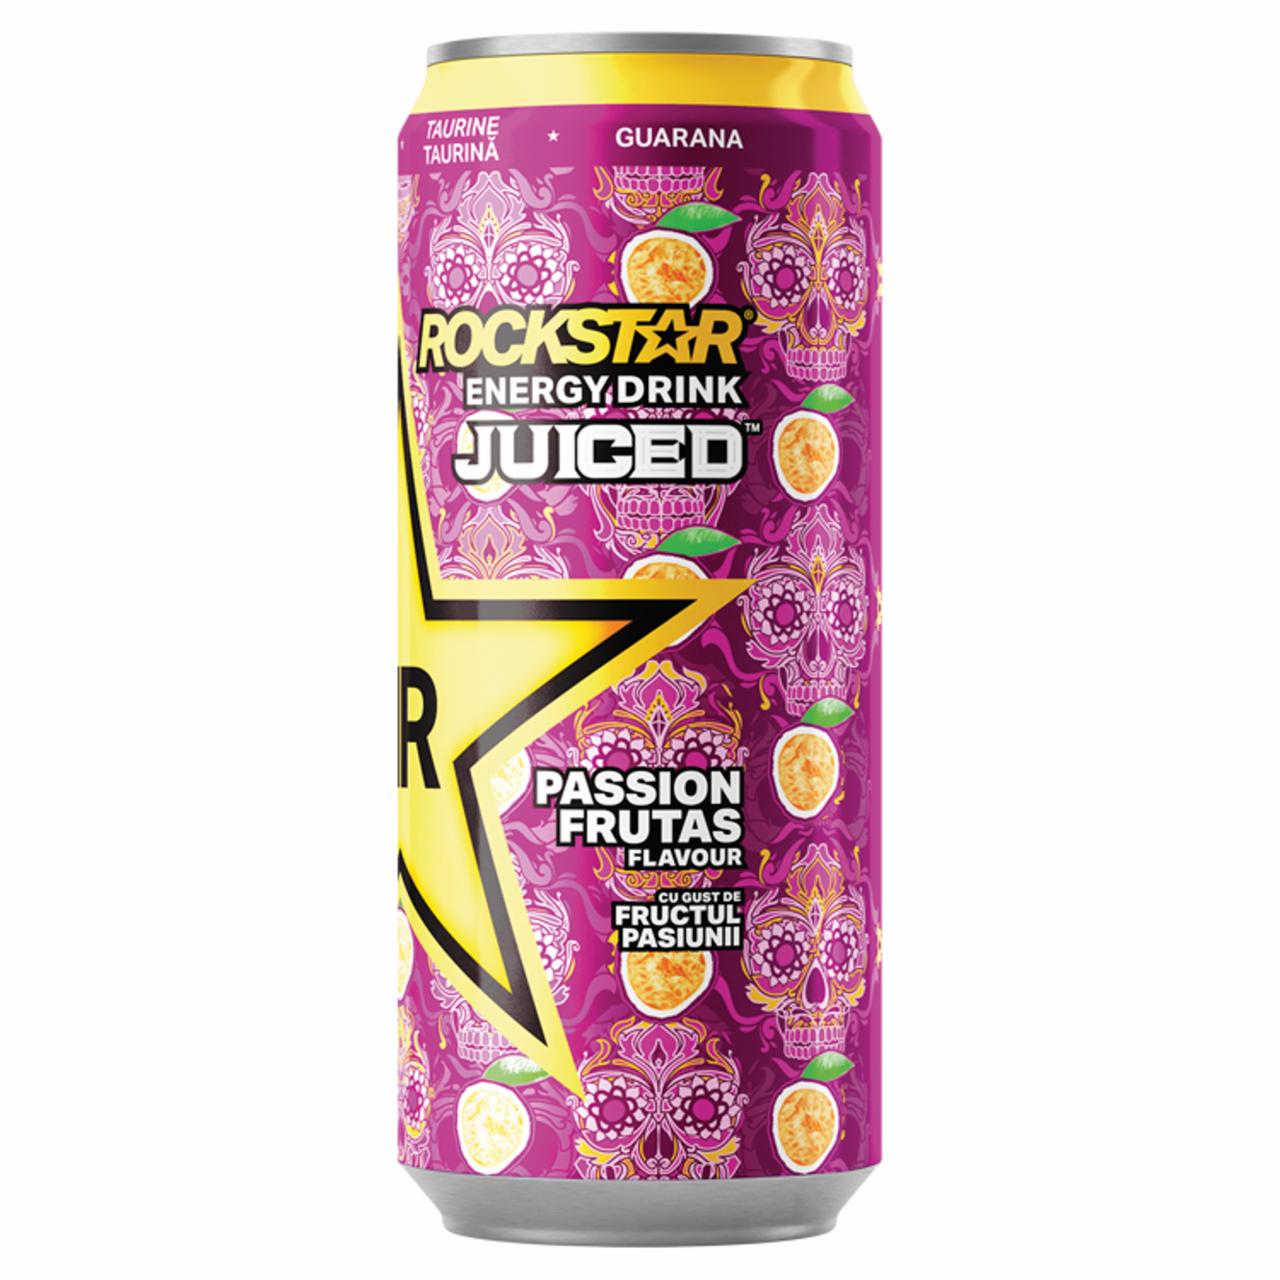 Zdjęcia - Rockstar Juiced Passion Frutas Gazowany napój energetyzujący o smaku marakui 500 ml